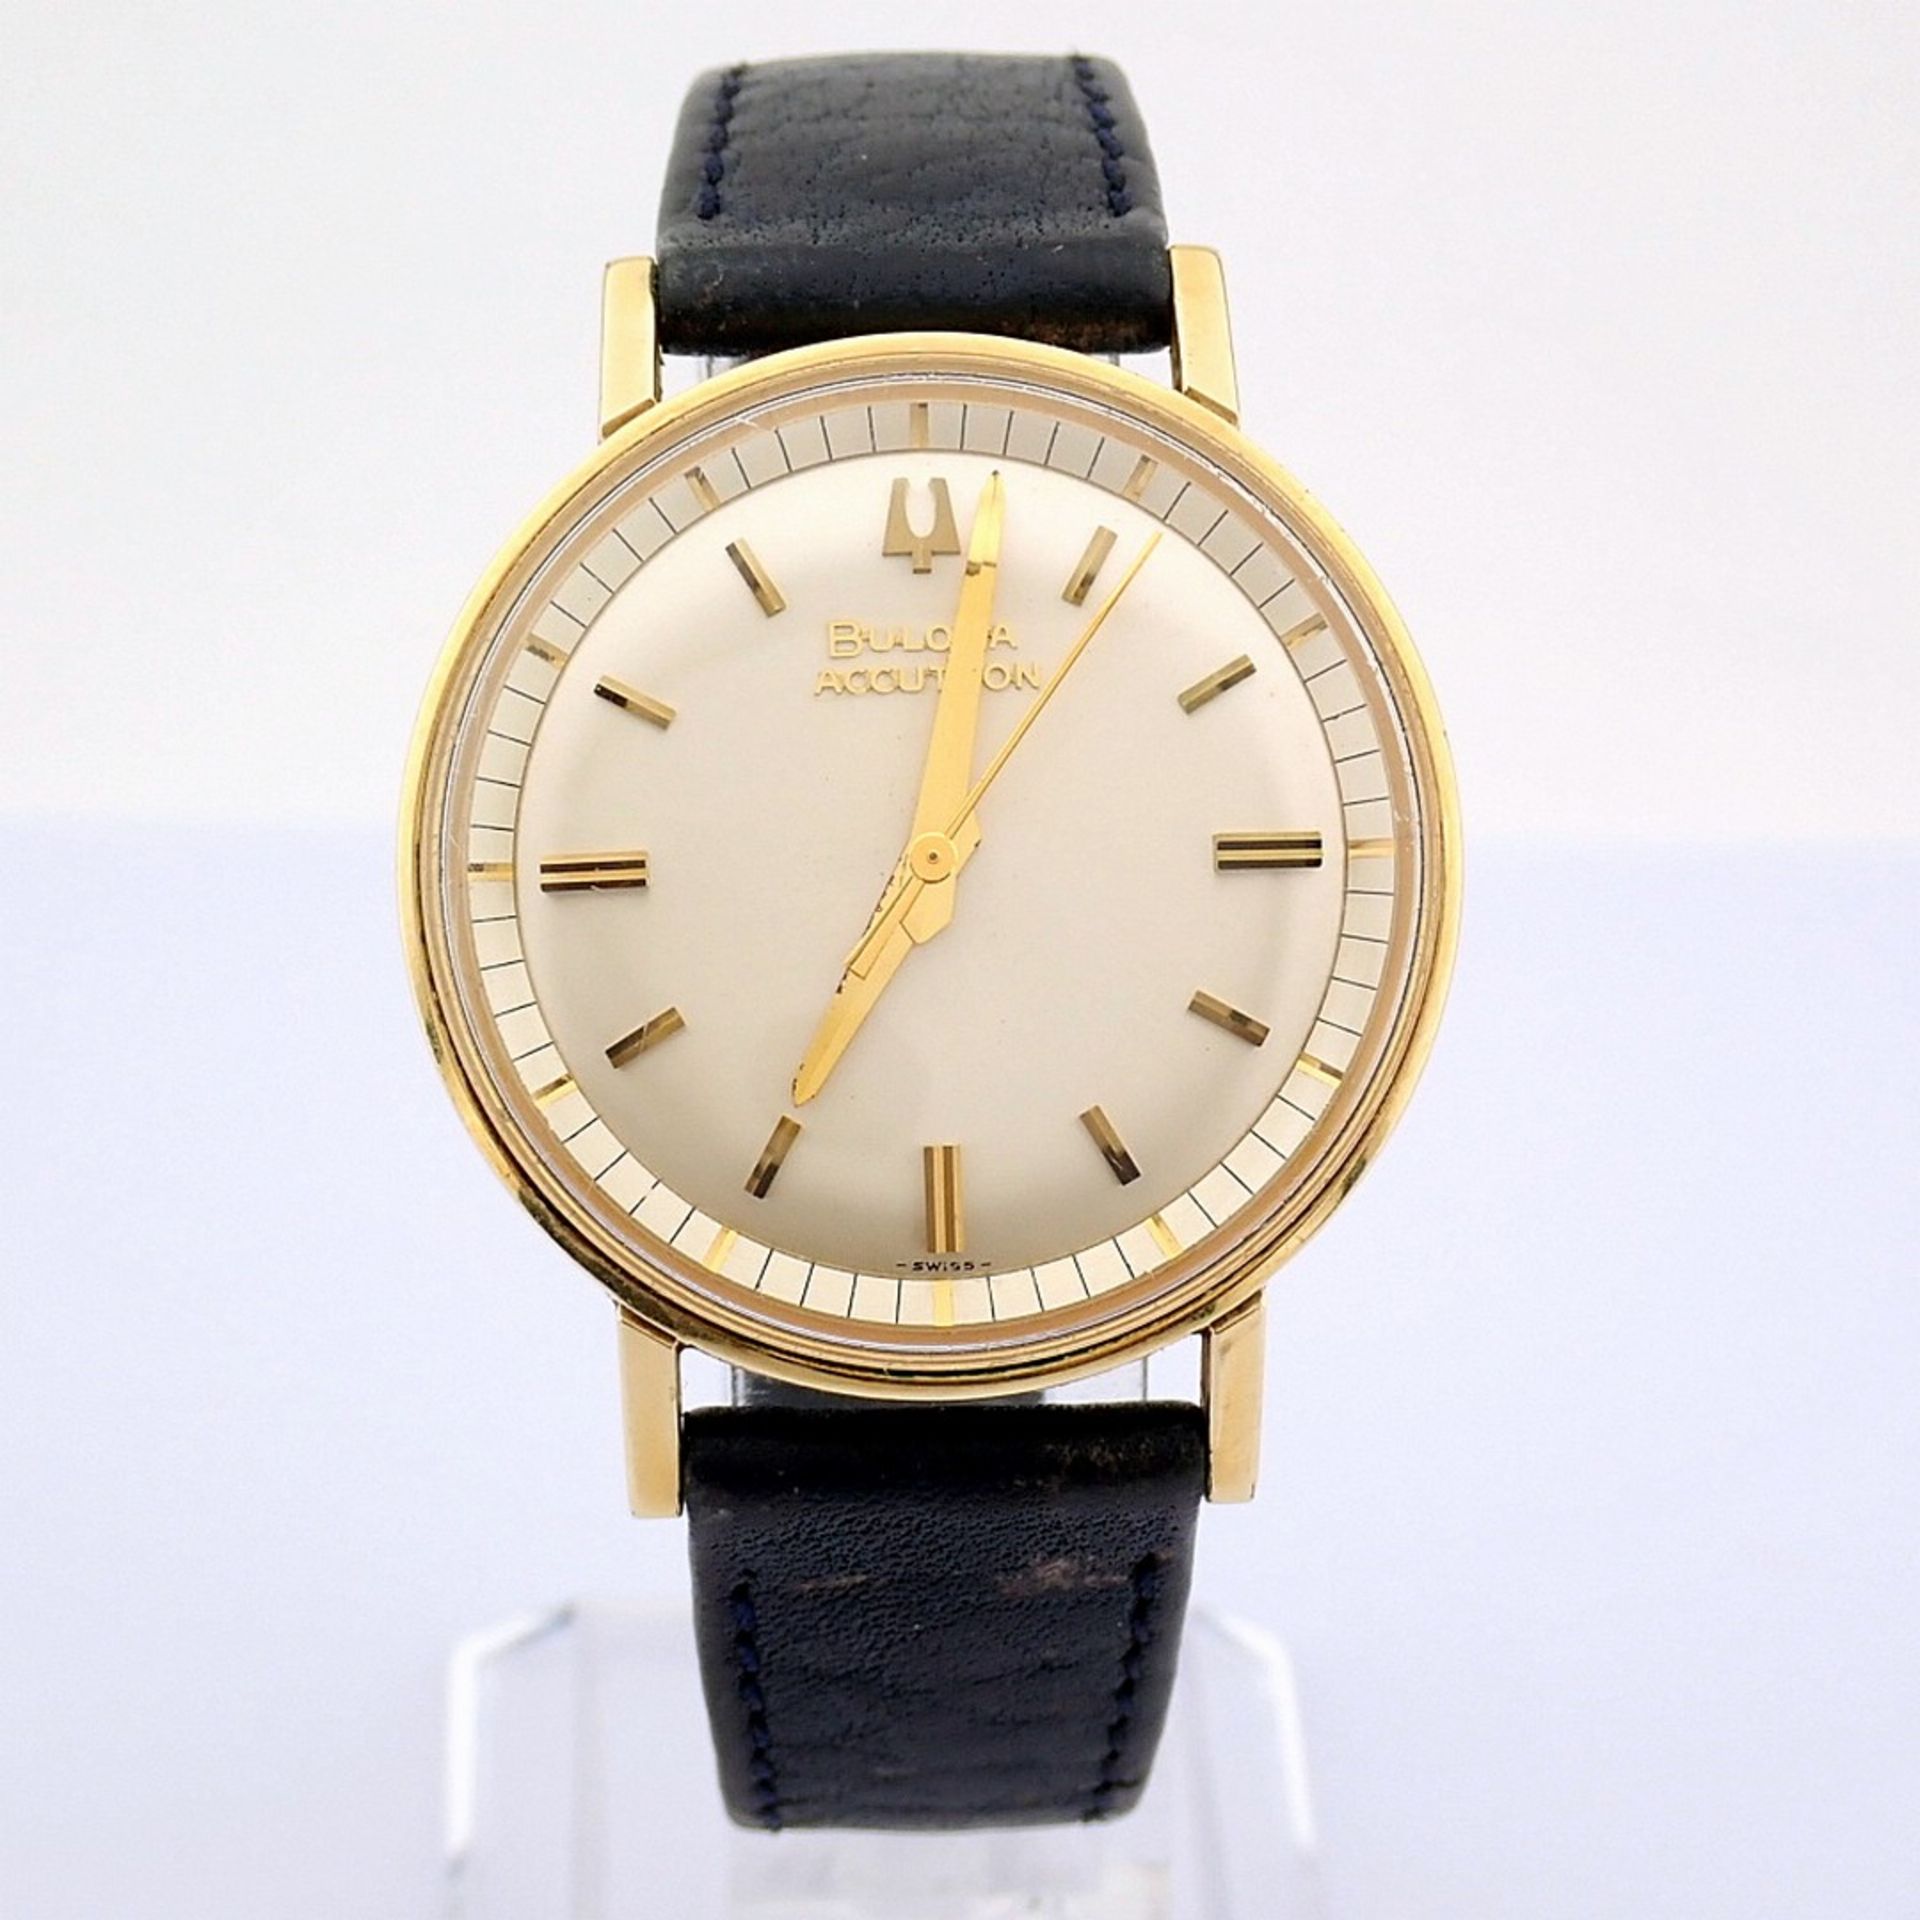 Bulova / Accutron - Vintage - Gentlemen's Steel Wrist Watch - Image 9 of 9